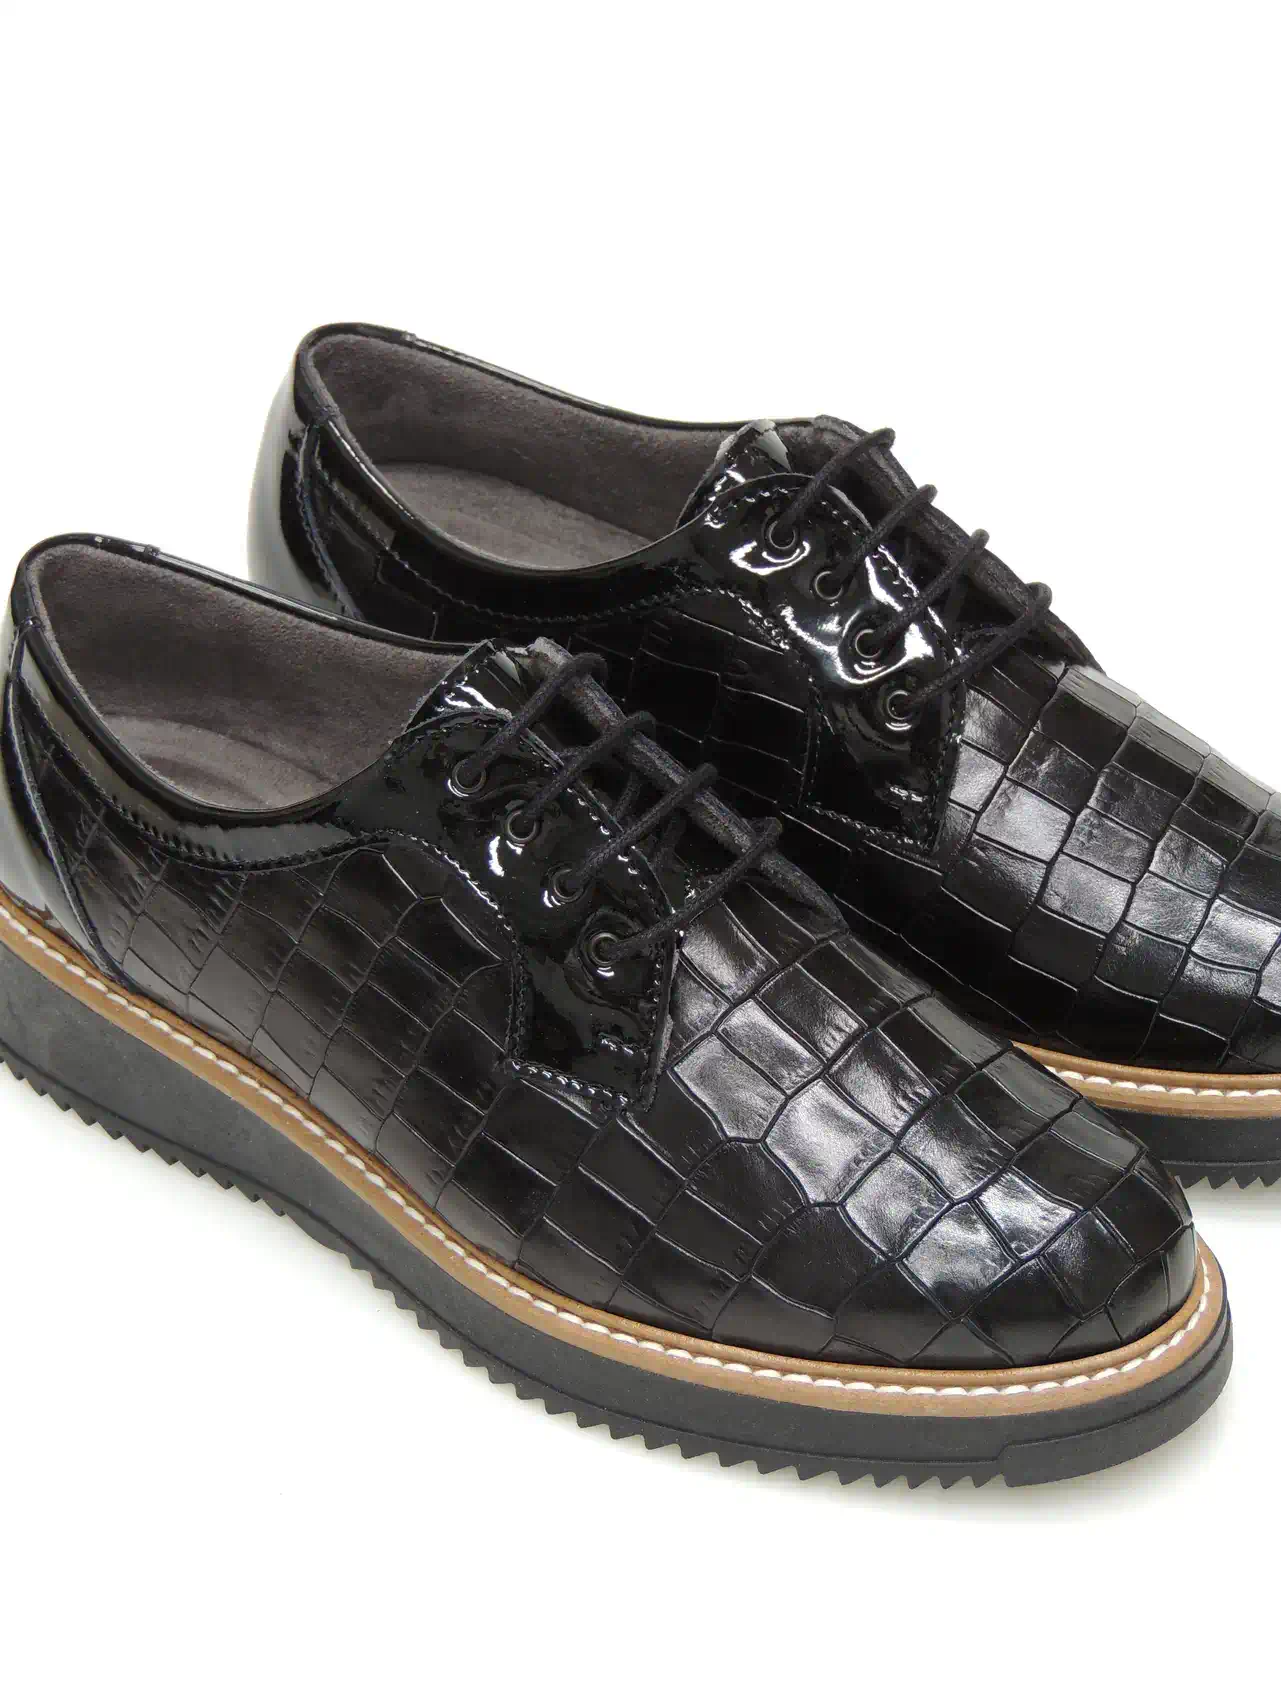 zapatos-blucher-pitillos-5391-piel-negro